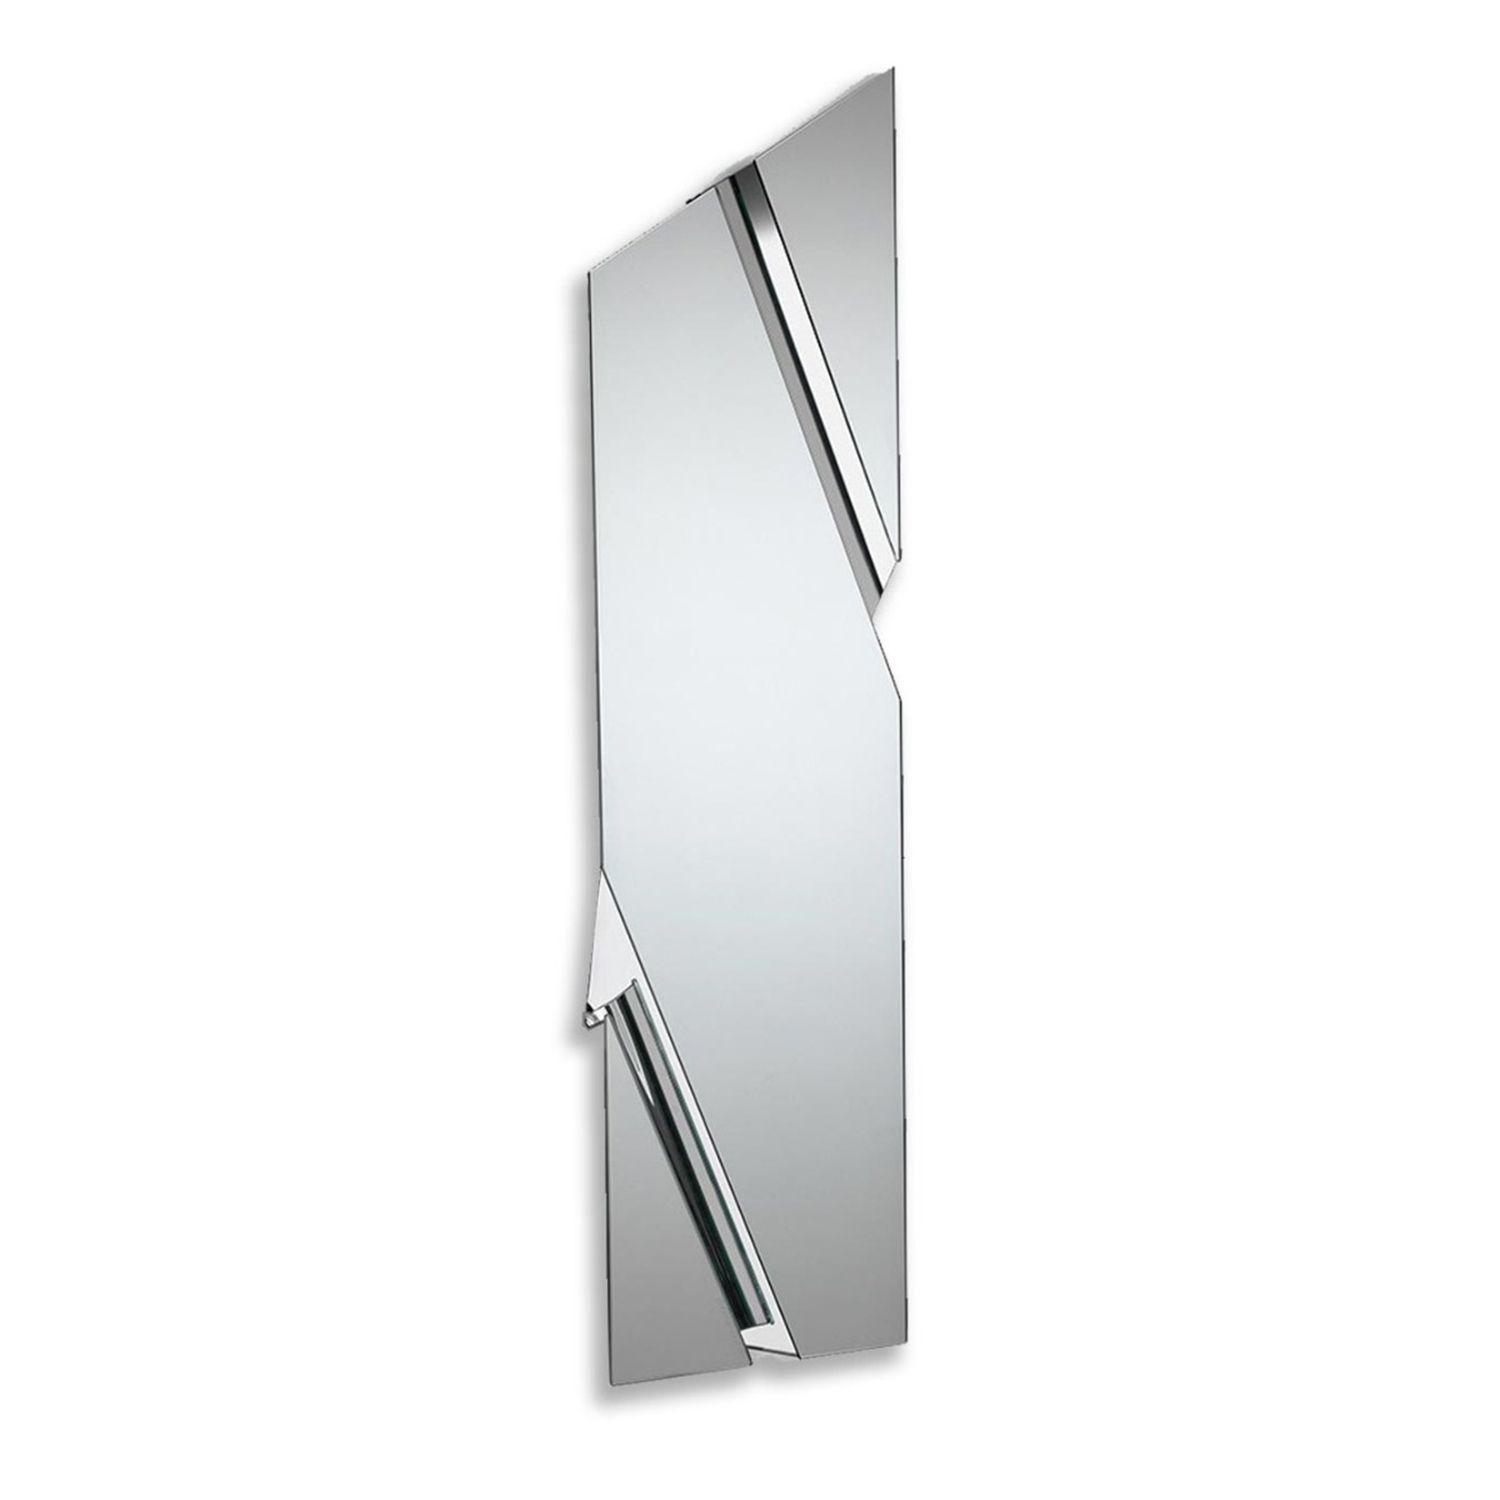 Výprodej Fiam designová zrcadla Wing (lichoběžník 200 x 53) - DESIGNPROPAGANDA